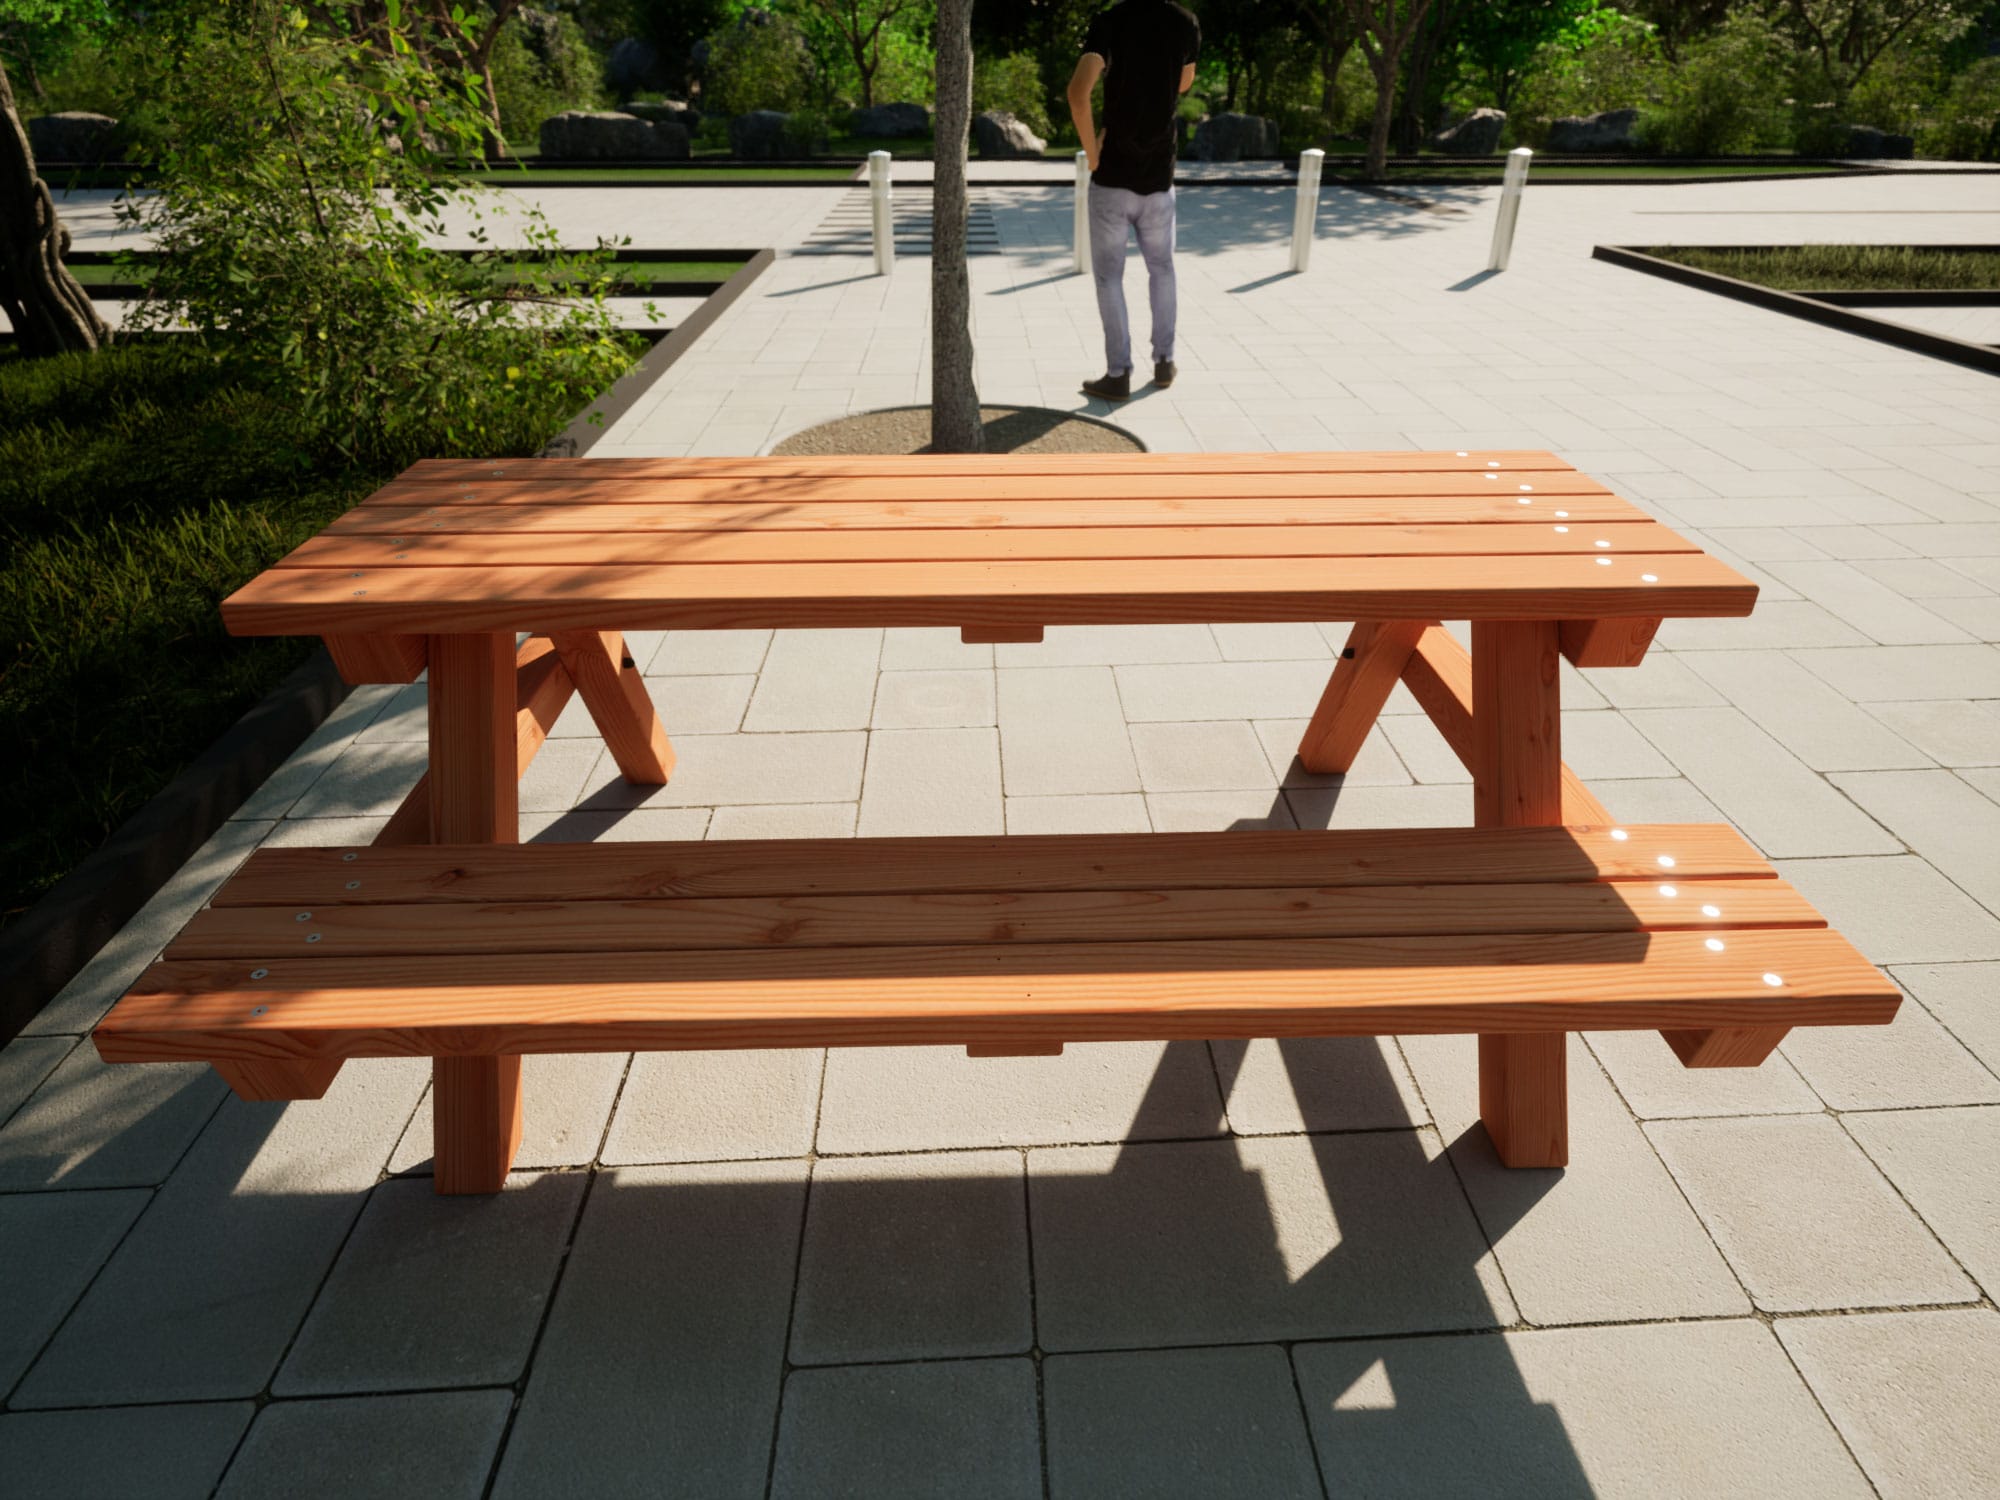 Tischbankkombination aus Holz in einem Park